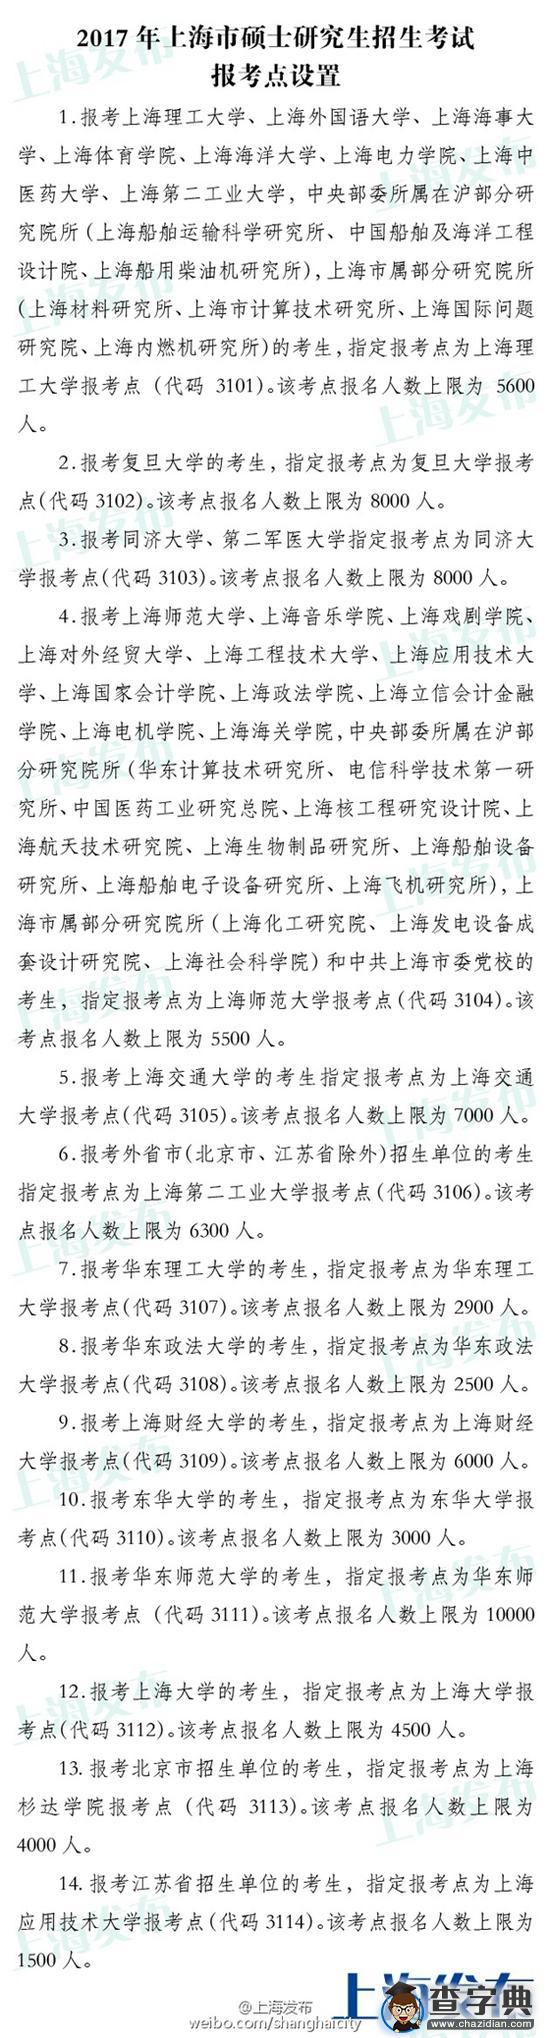 2017年上海硕士研究生报考点公布1